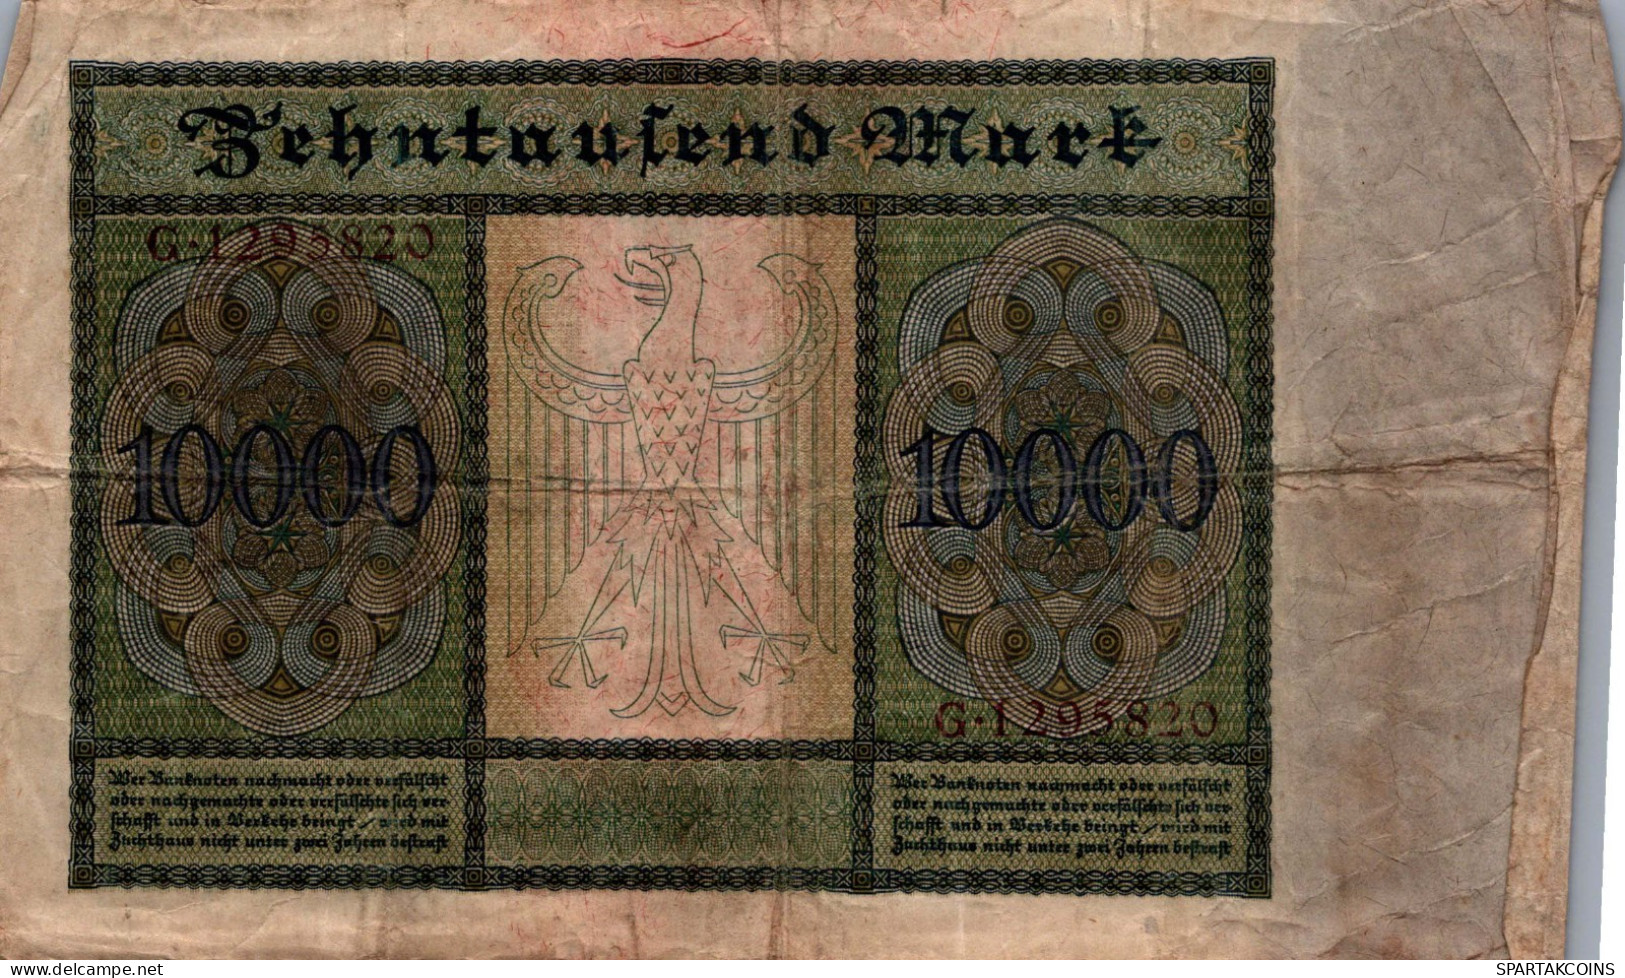 10000 MARK 1922 Stadt BERLIN DEUTSCHLAND Papiergeld Banknote #PL162 - [11] Local Banknote Issues